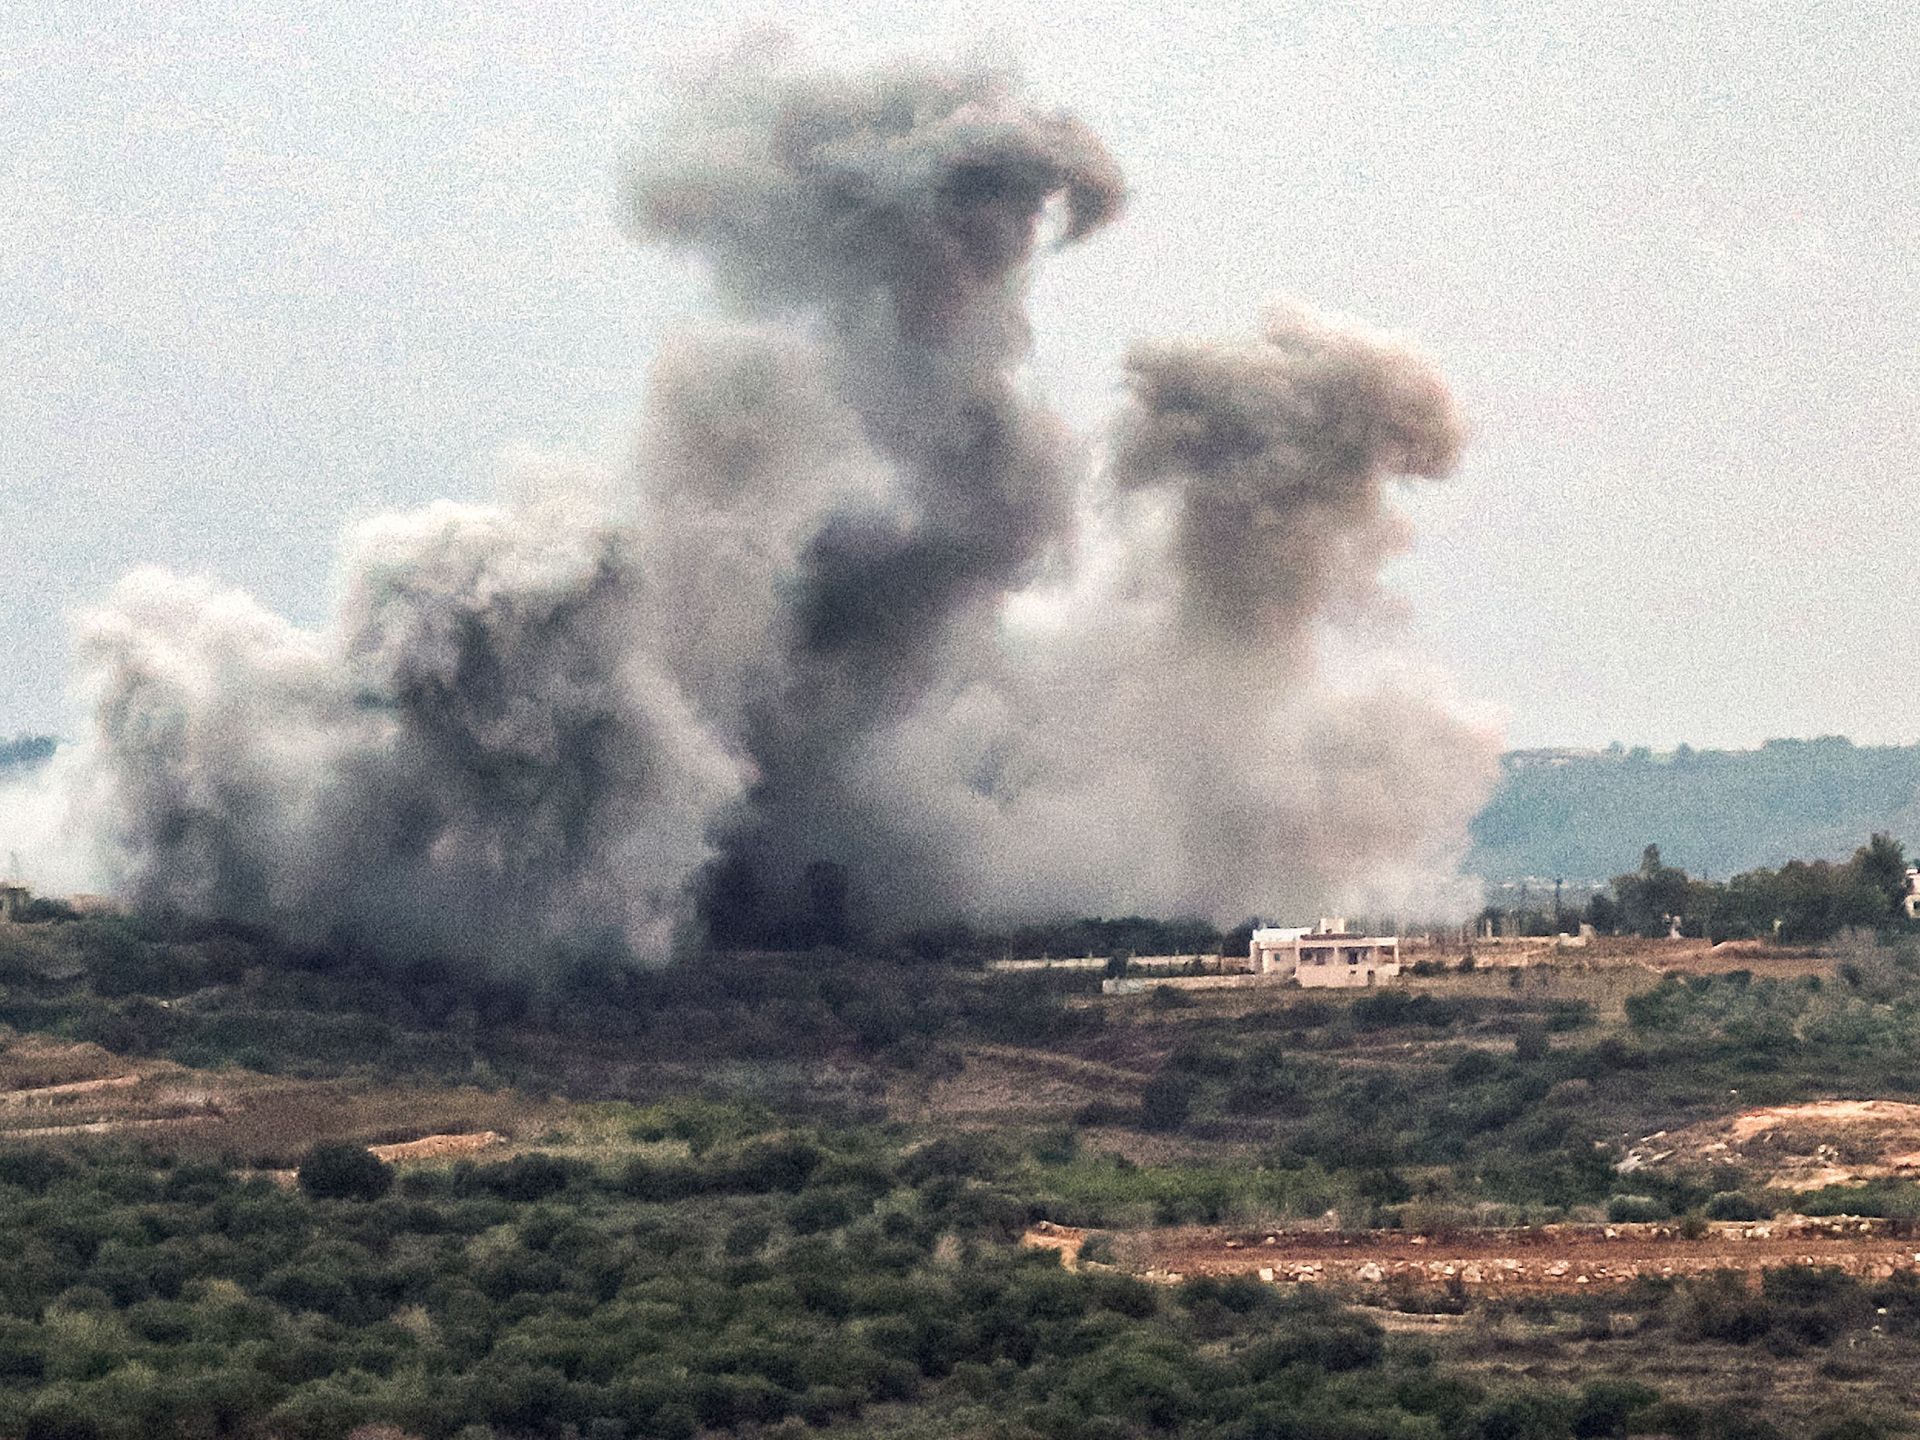 إسرائيل تقصف بالمدفعية جنوبي لبنان ردا على حزب الله | أخبار – البوكس نيوز